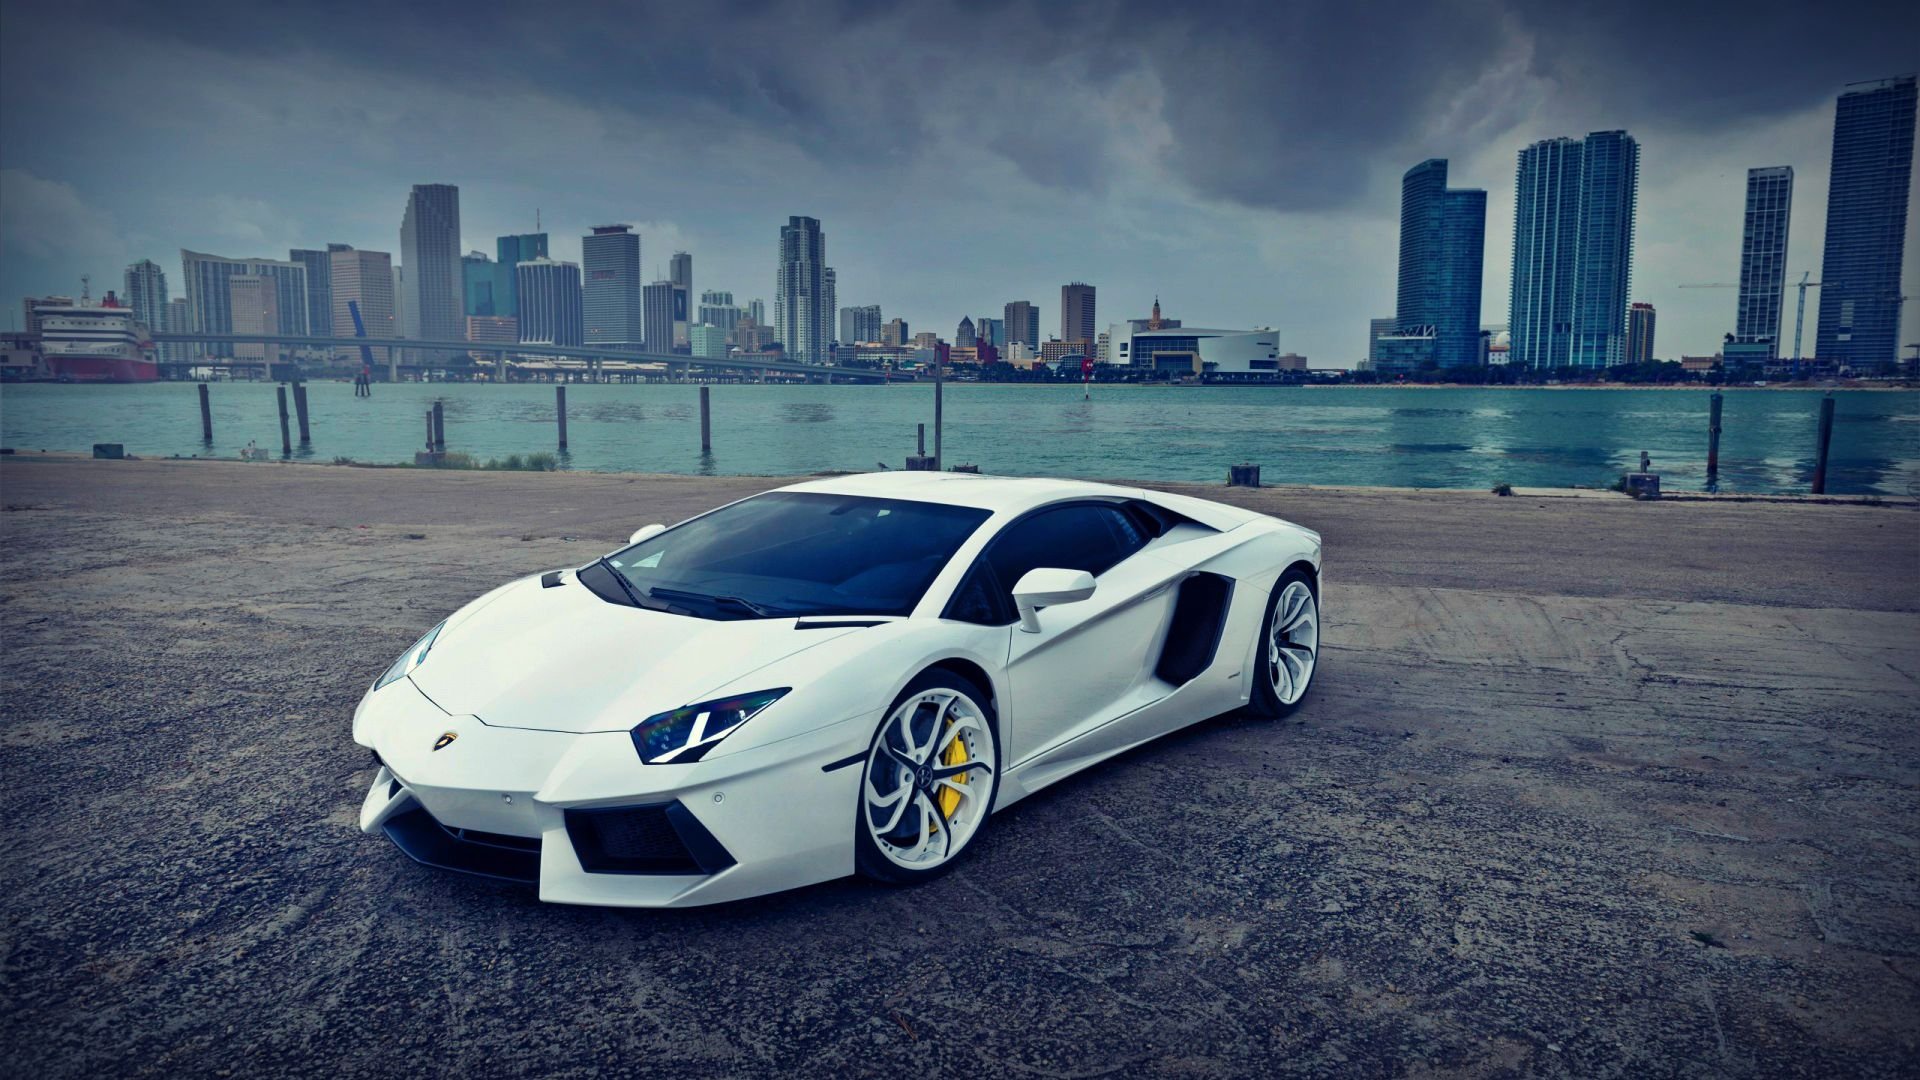 Lamborghini Car Images Hd Free Download